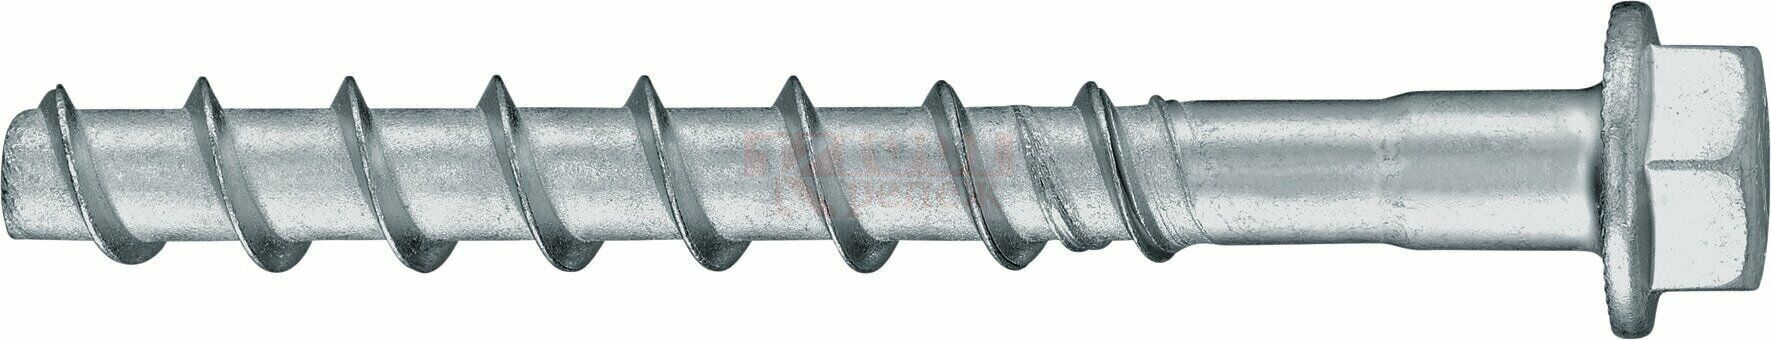 HUS2-H 8/10 8x95 Анкер-шуруп HILTI для бетона оц. сталь, 8x95 45/30 мм